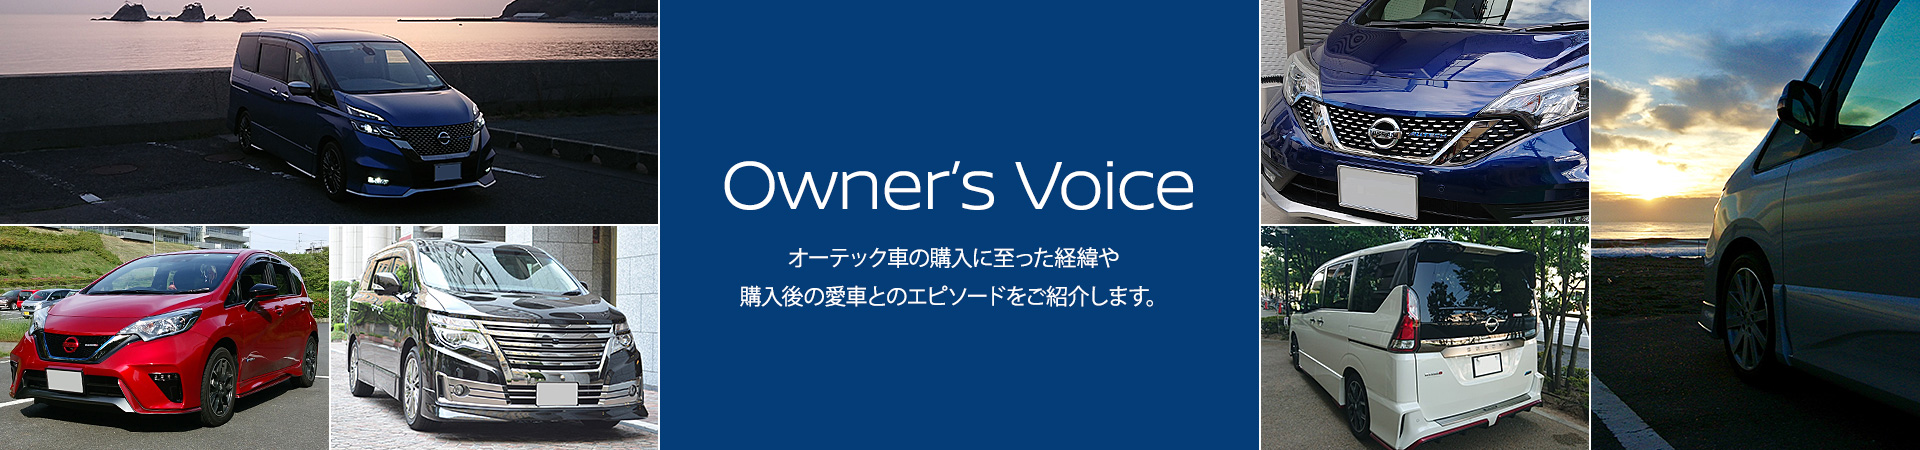 Owner's Voice　オーテック車の購入に至った経緯や購入後の愛車とのエピソードをご紹介します。